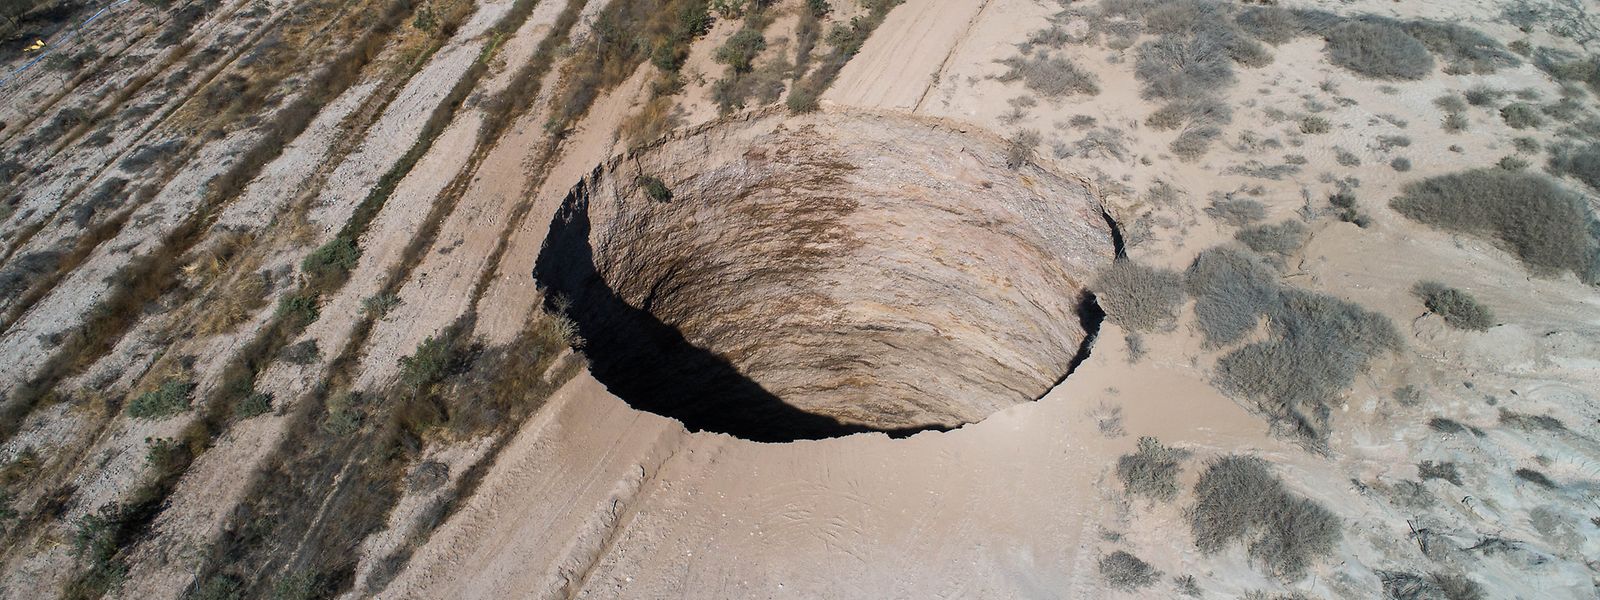 Das Loch mit einem Durchmesser von etwa 25 Metern sei am vergangenen Samstag aufgetaucht, meldete das Nationale Amt für Geologie und Bergbau (Sernageomin). 